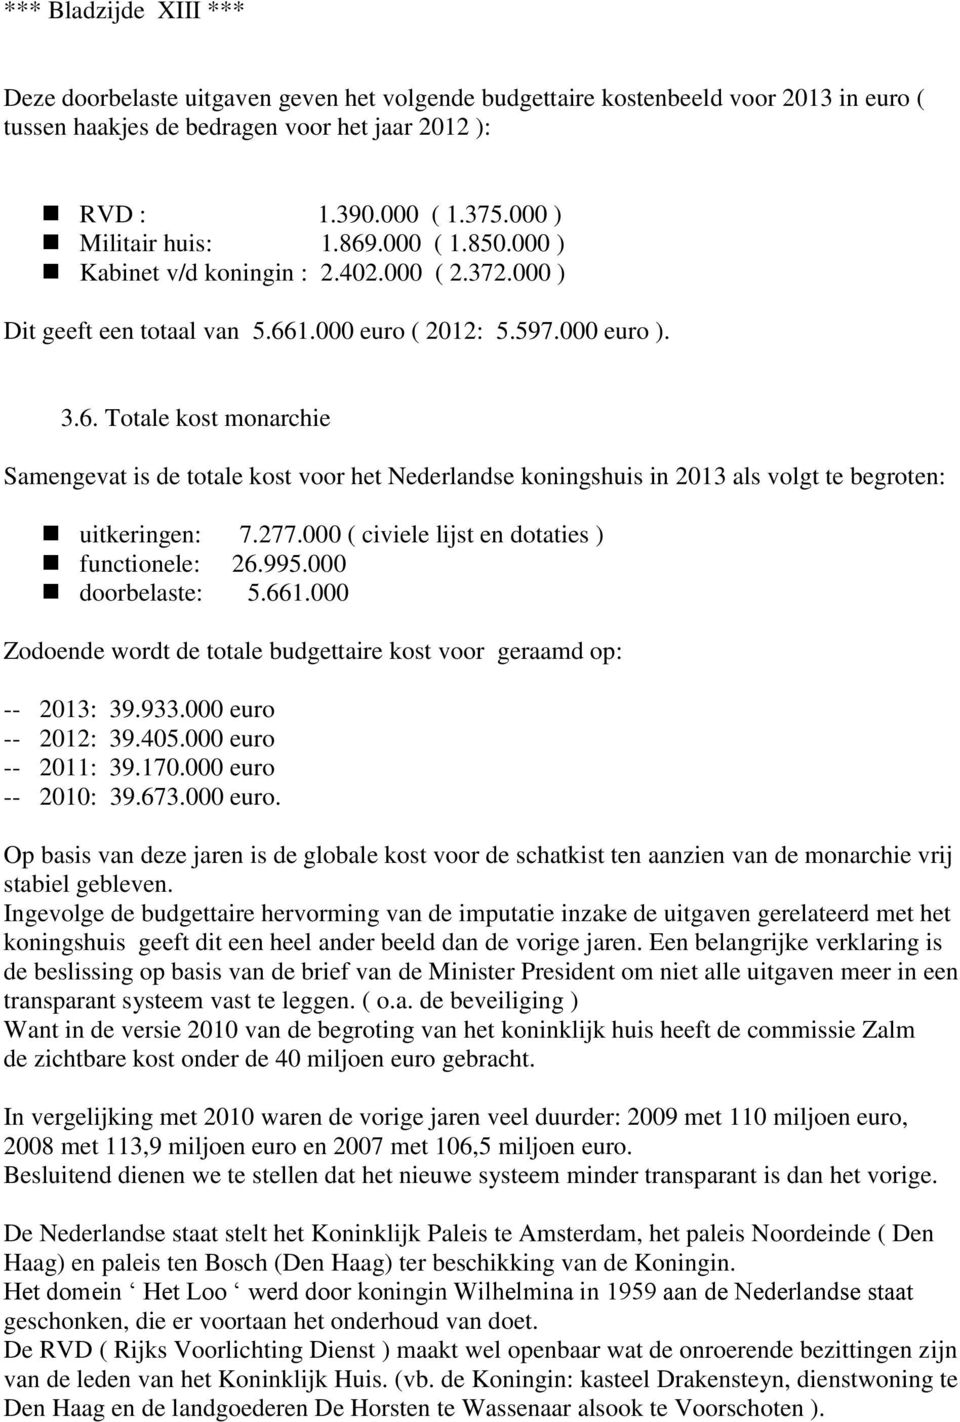 277.000 ( civiele lijst en dotaties ) functionele: 26.995.000 doorbelaste: 5.661.000 Zodoende wordt de totale budgettaire kost voor geraamd op: -- 2013: 39.933.000 euro -- 2012: 39.405.